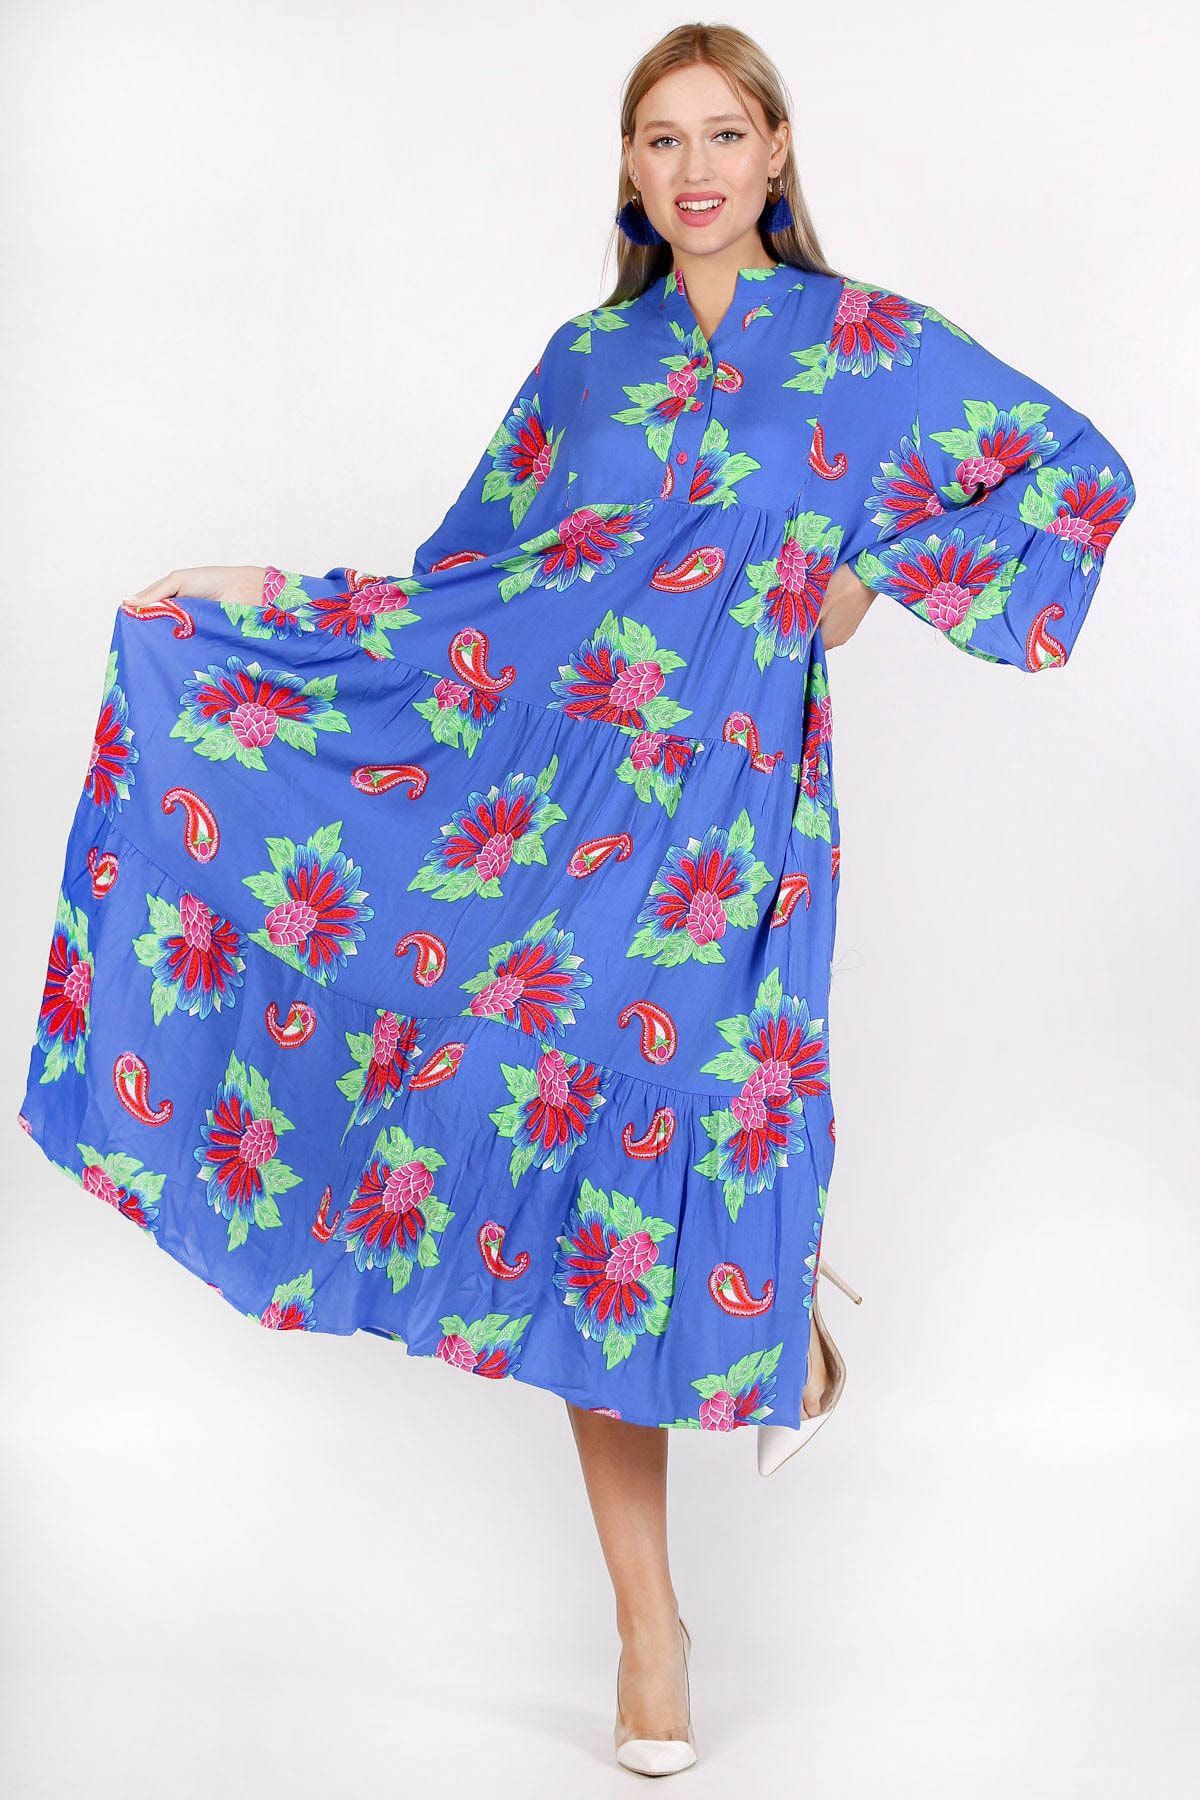 Chiccy Mavi Patlı Yaka Fırfırlı Kol Çiçekli Allover Baskılı Geniş Kesim Dokuma Elbise